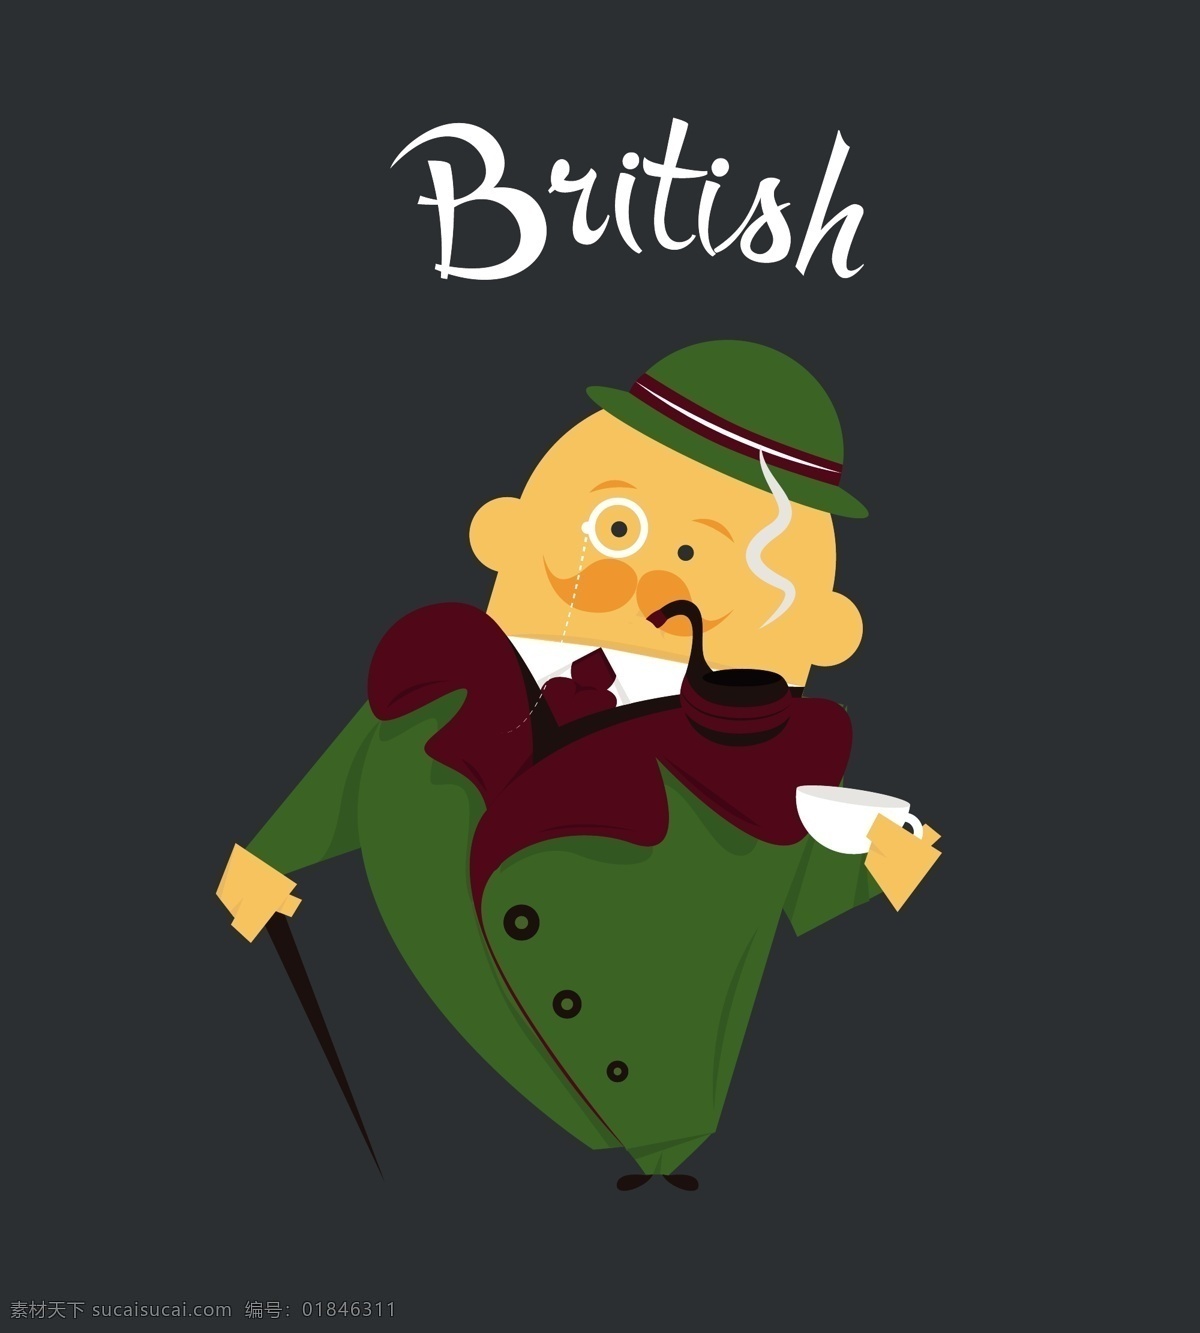 英国男子插图 动画 社会 地势平坦 性格 英语 卡通 人物 插图 教授 英格兰 绅士传统 欧洲 英国